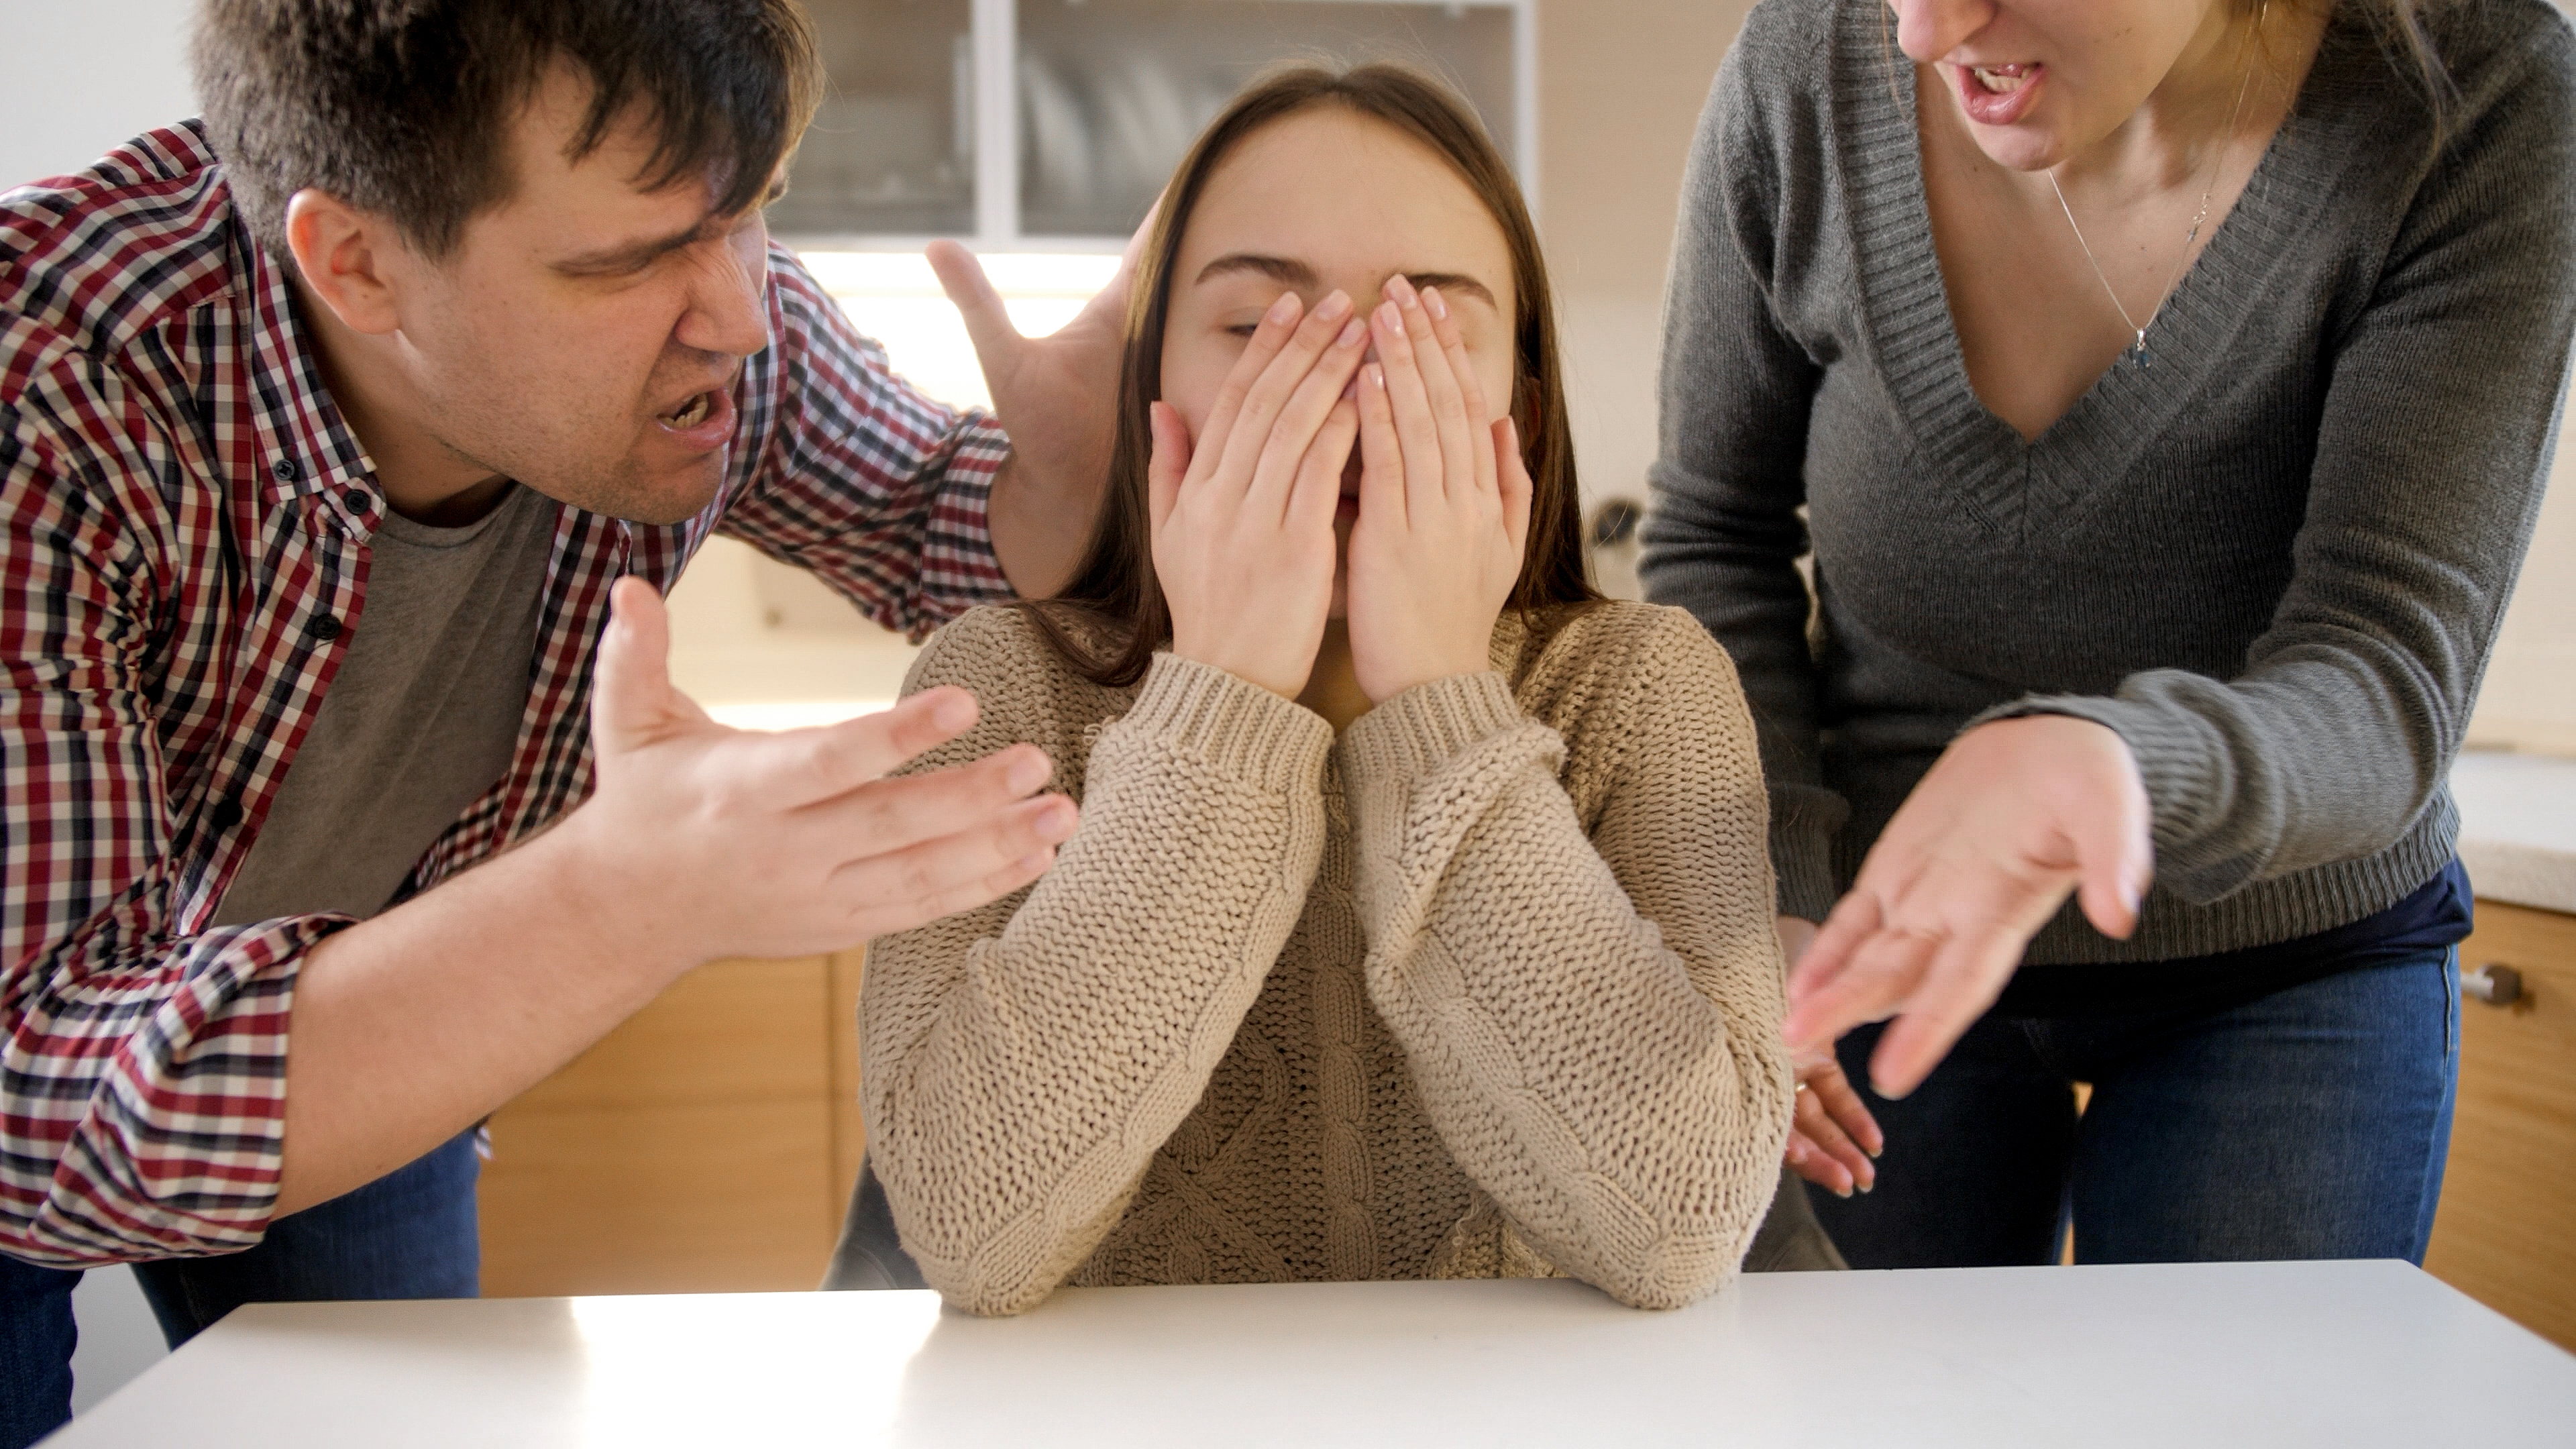 Une adolescente qui pleure après un conflit avec ses parents | Source : Shutterstock